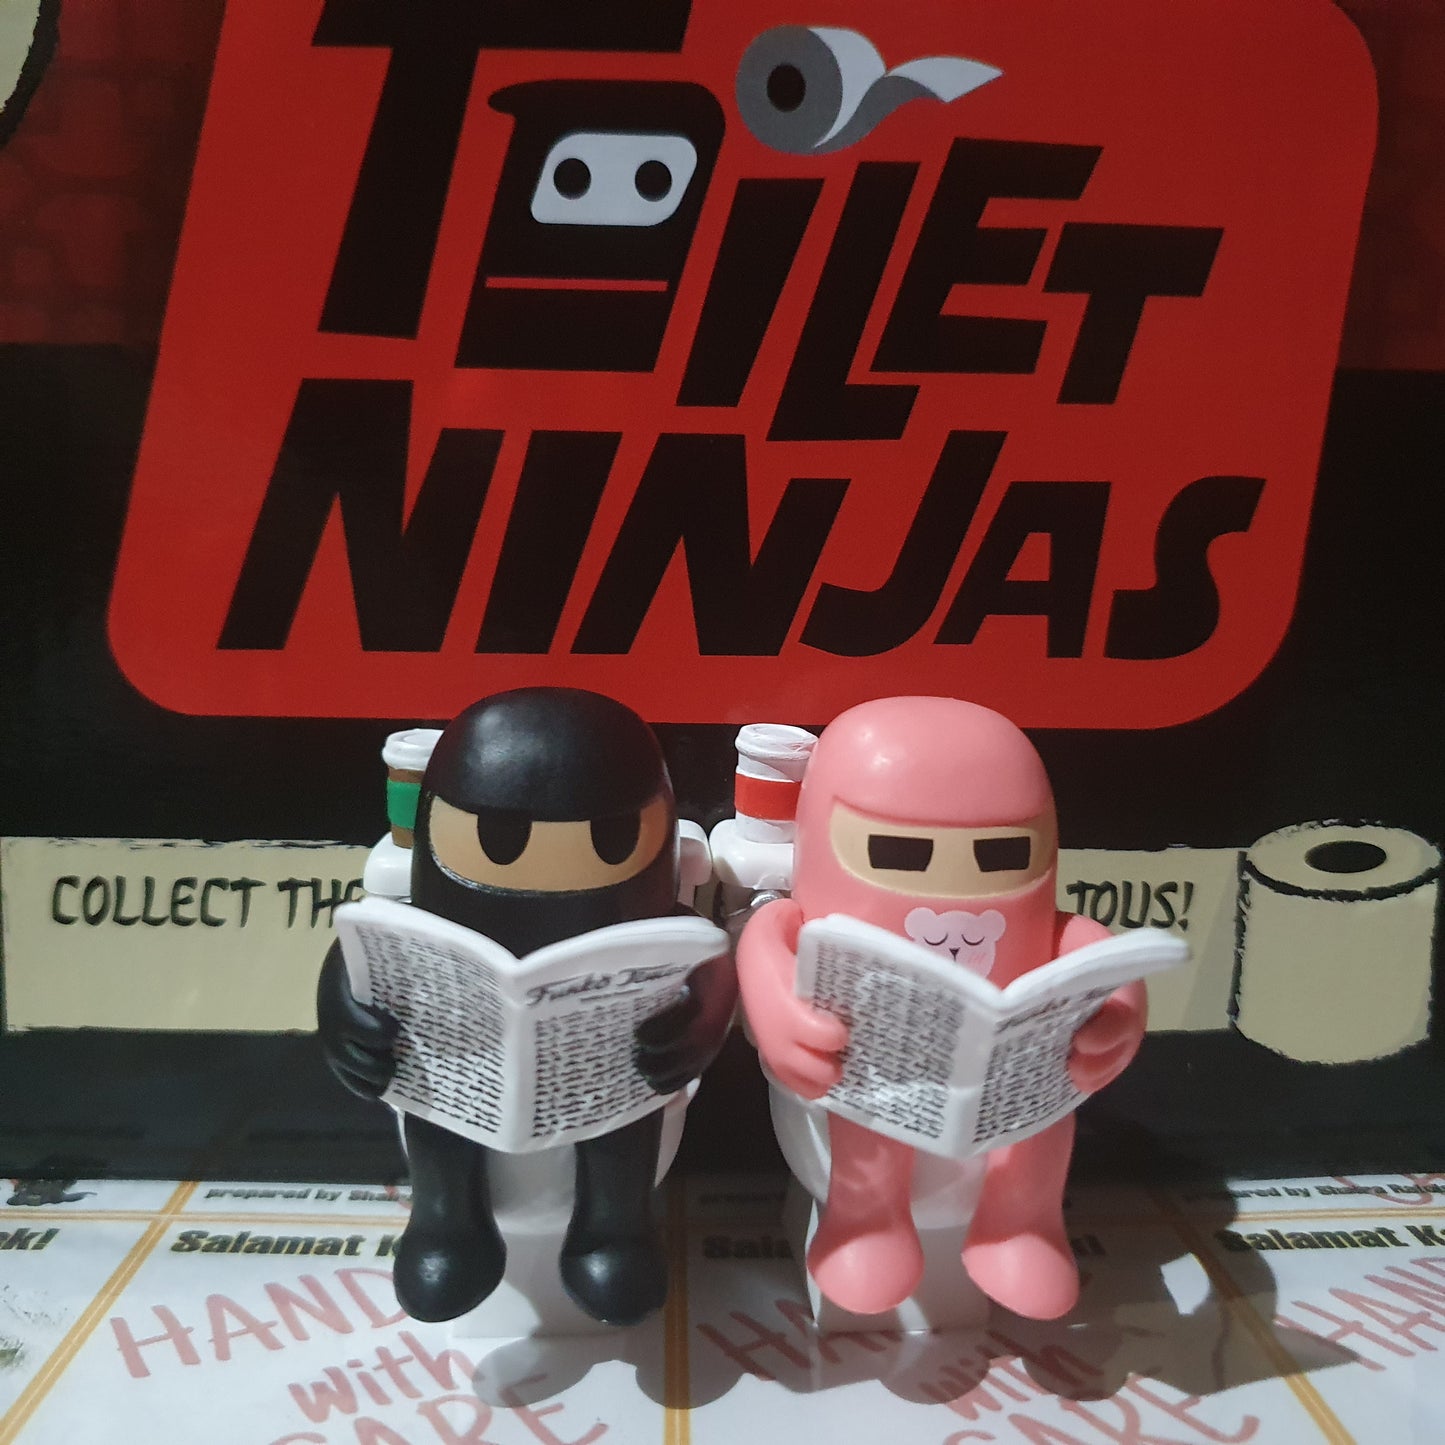 On Hand Toilet Ninja